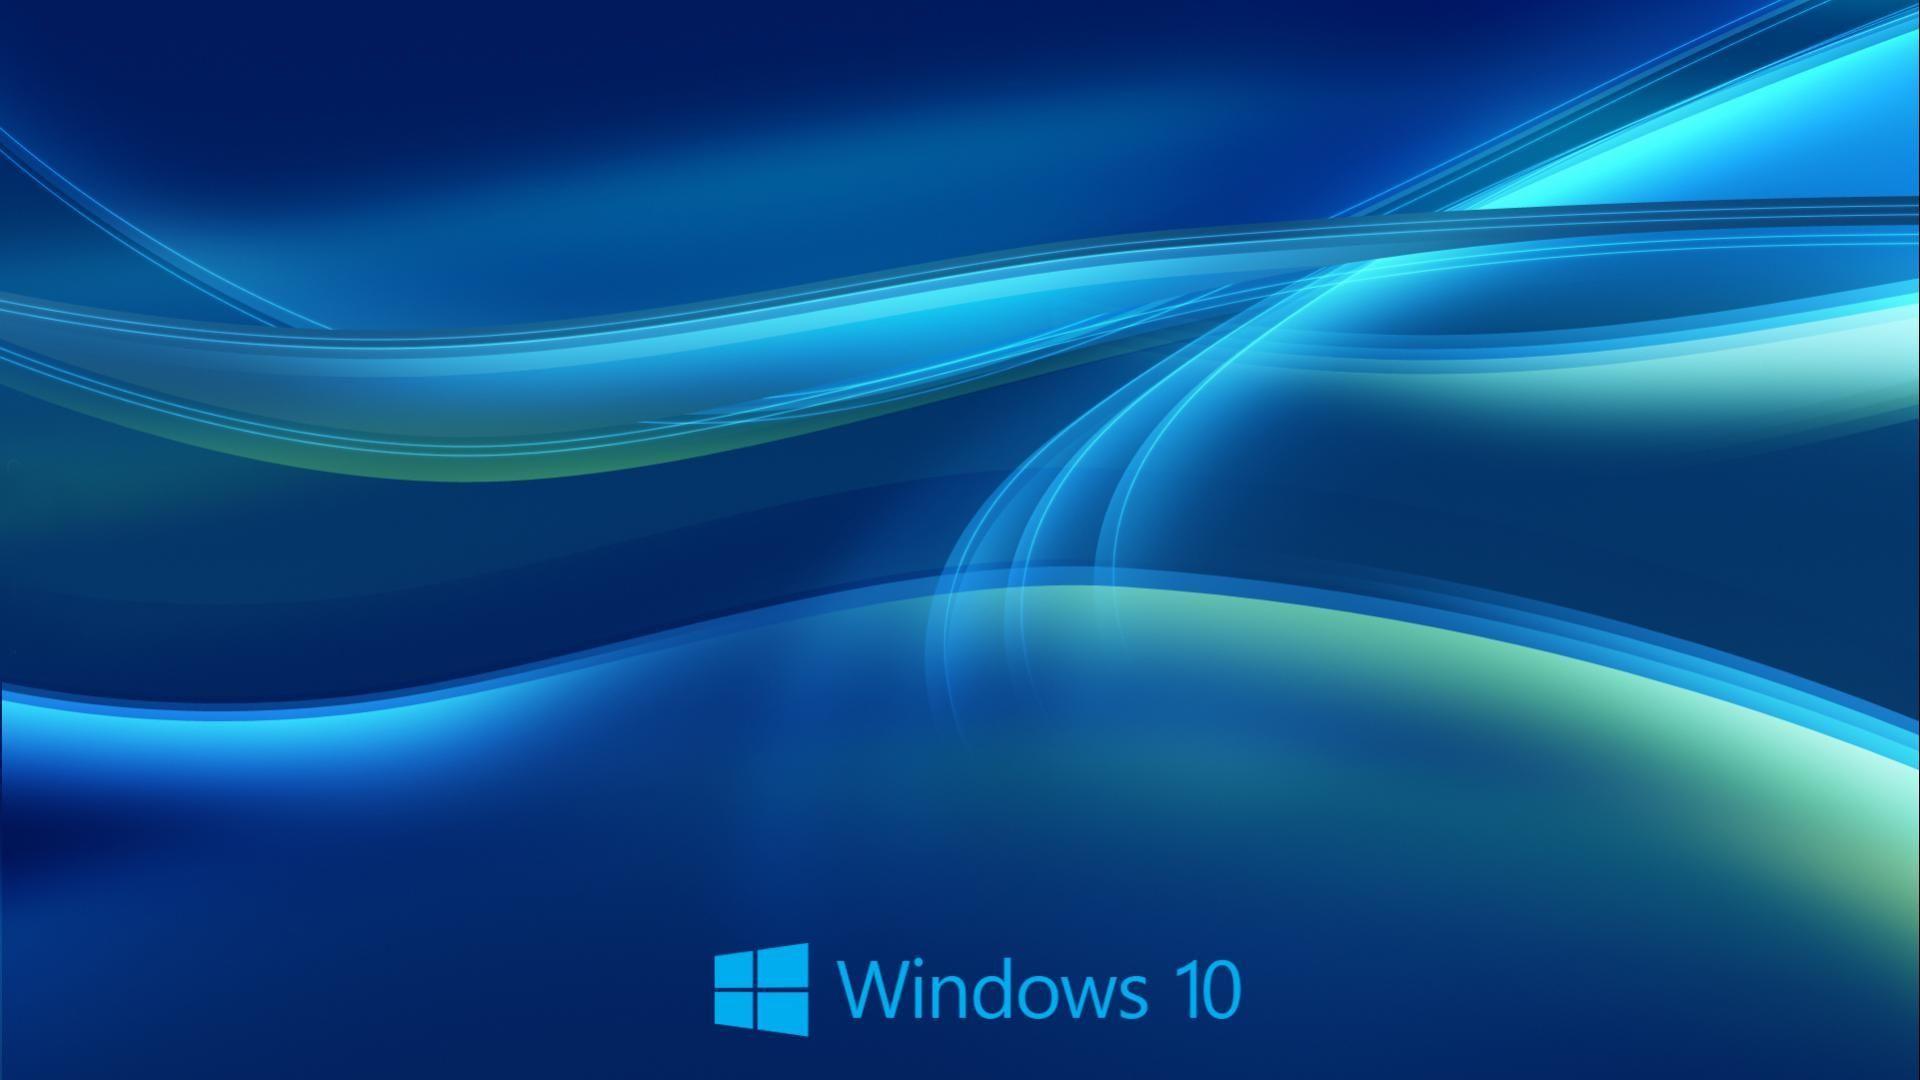 Windows 10 HD Wallpaper 1920x1080. Free